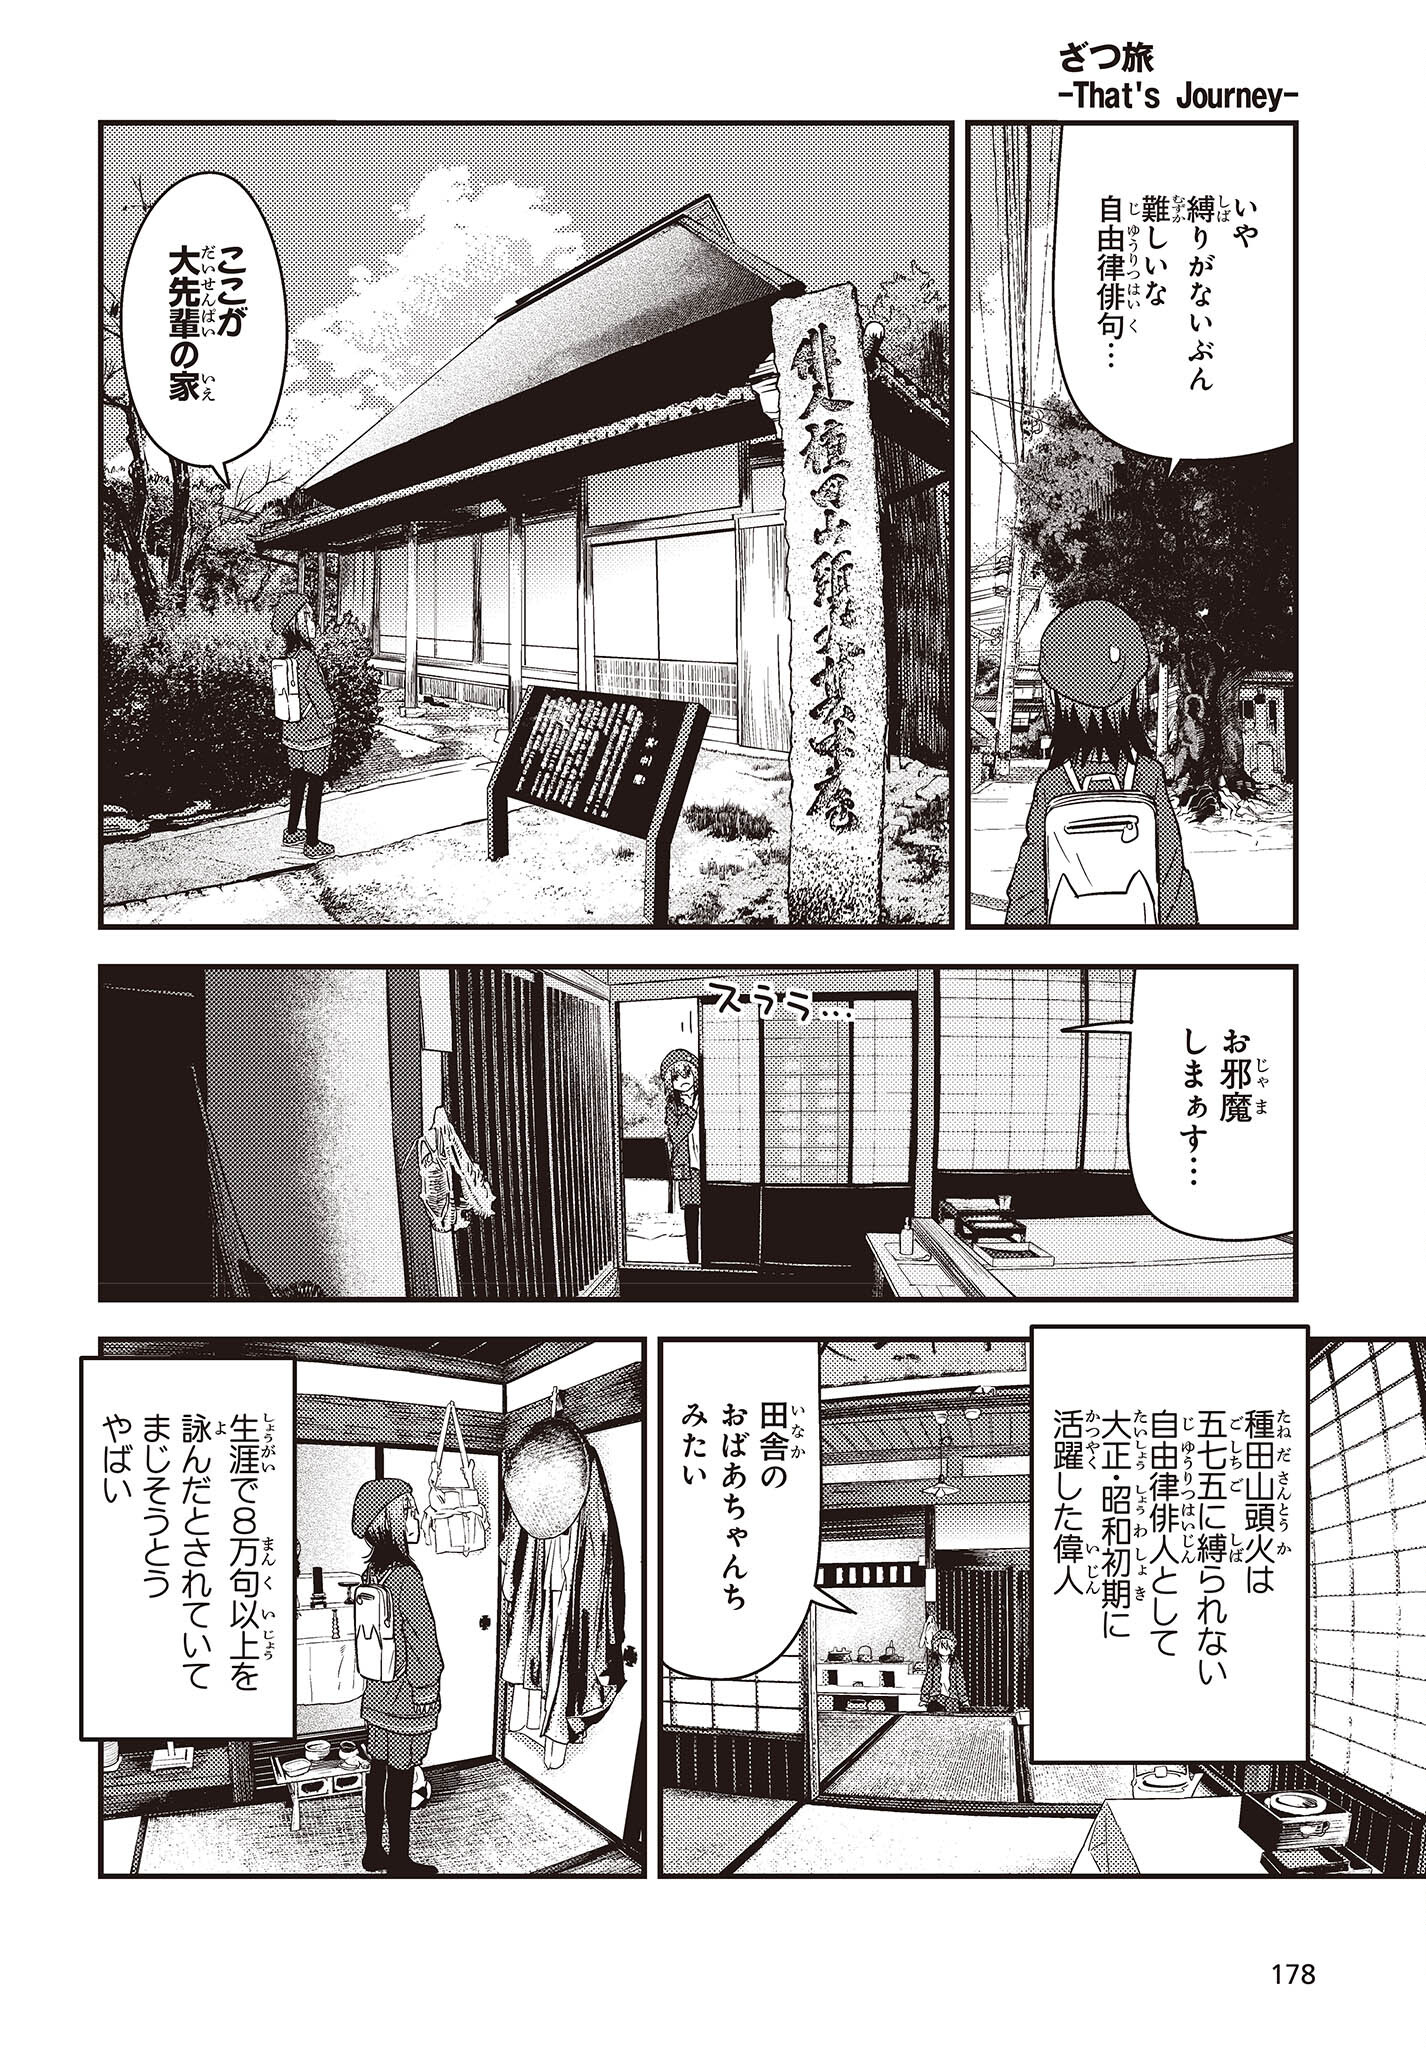 ざつ旅-That’s Journey- 第29話 - Page 6